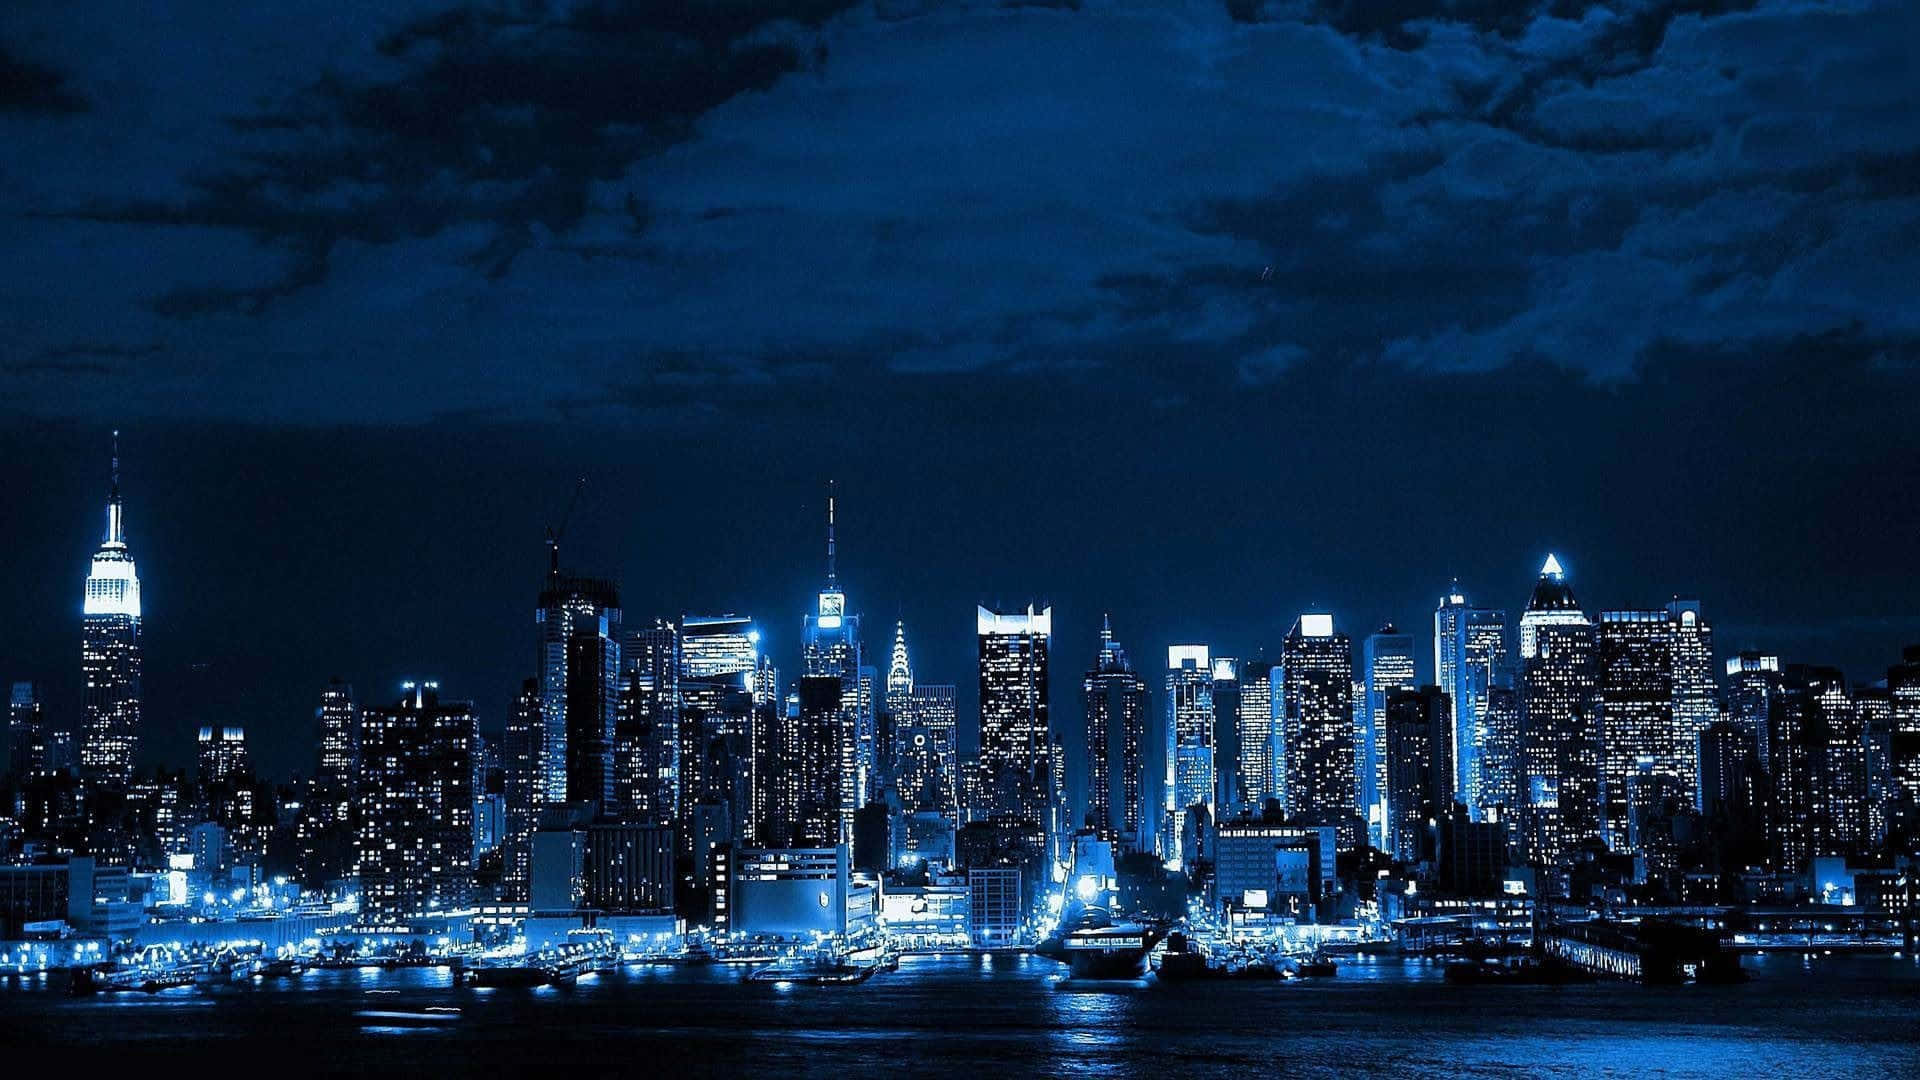 Imagembrilhante Da Cidade De Nova York À Noite Em Azul.